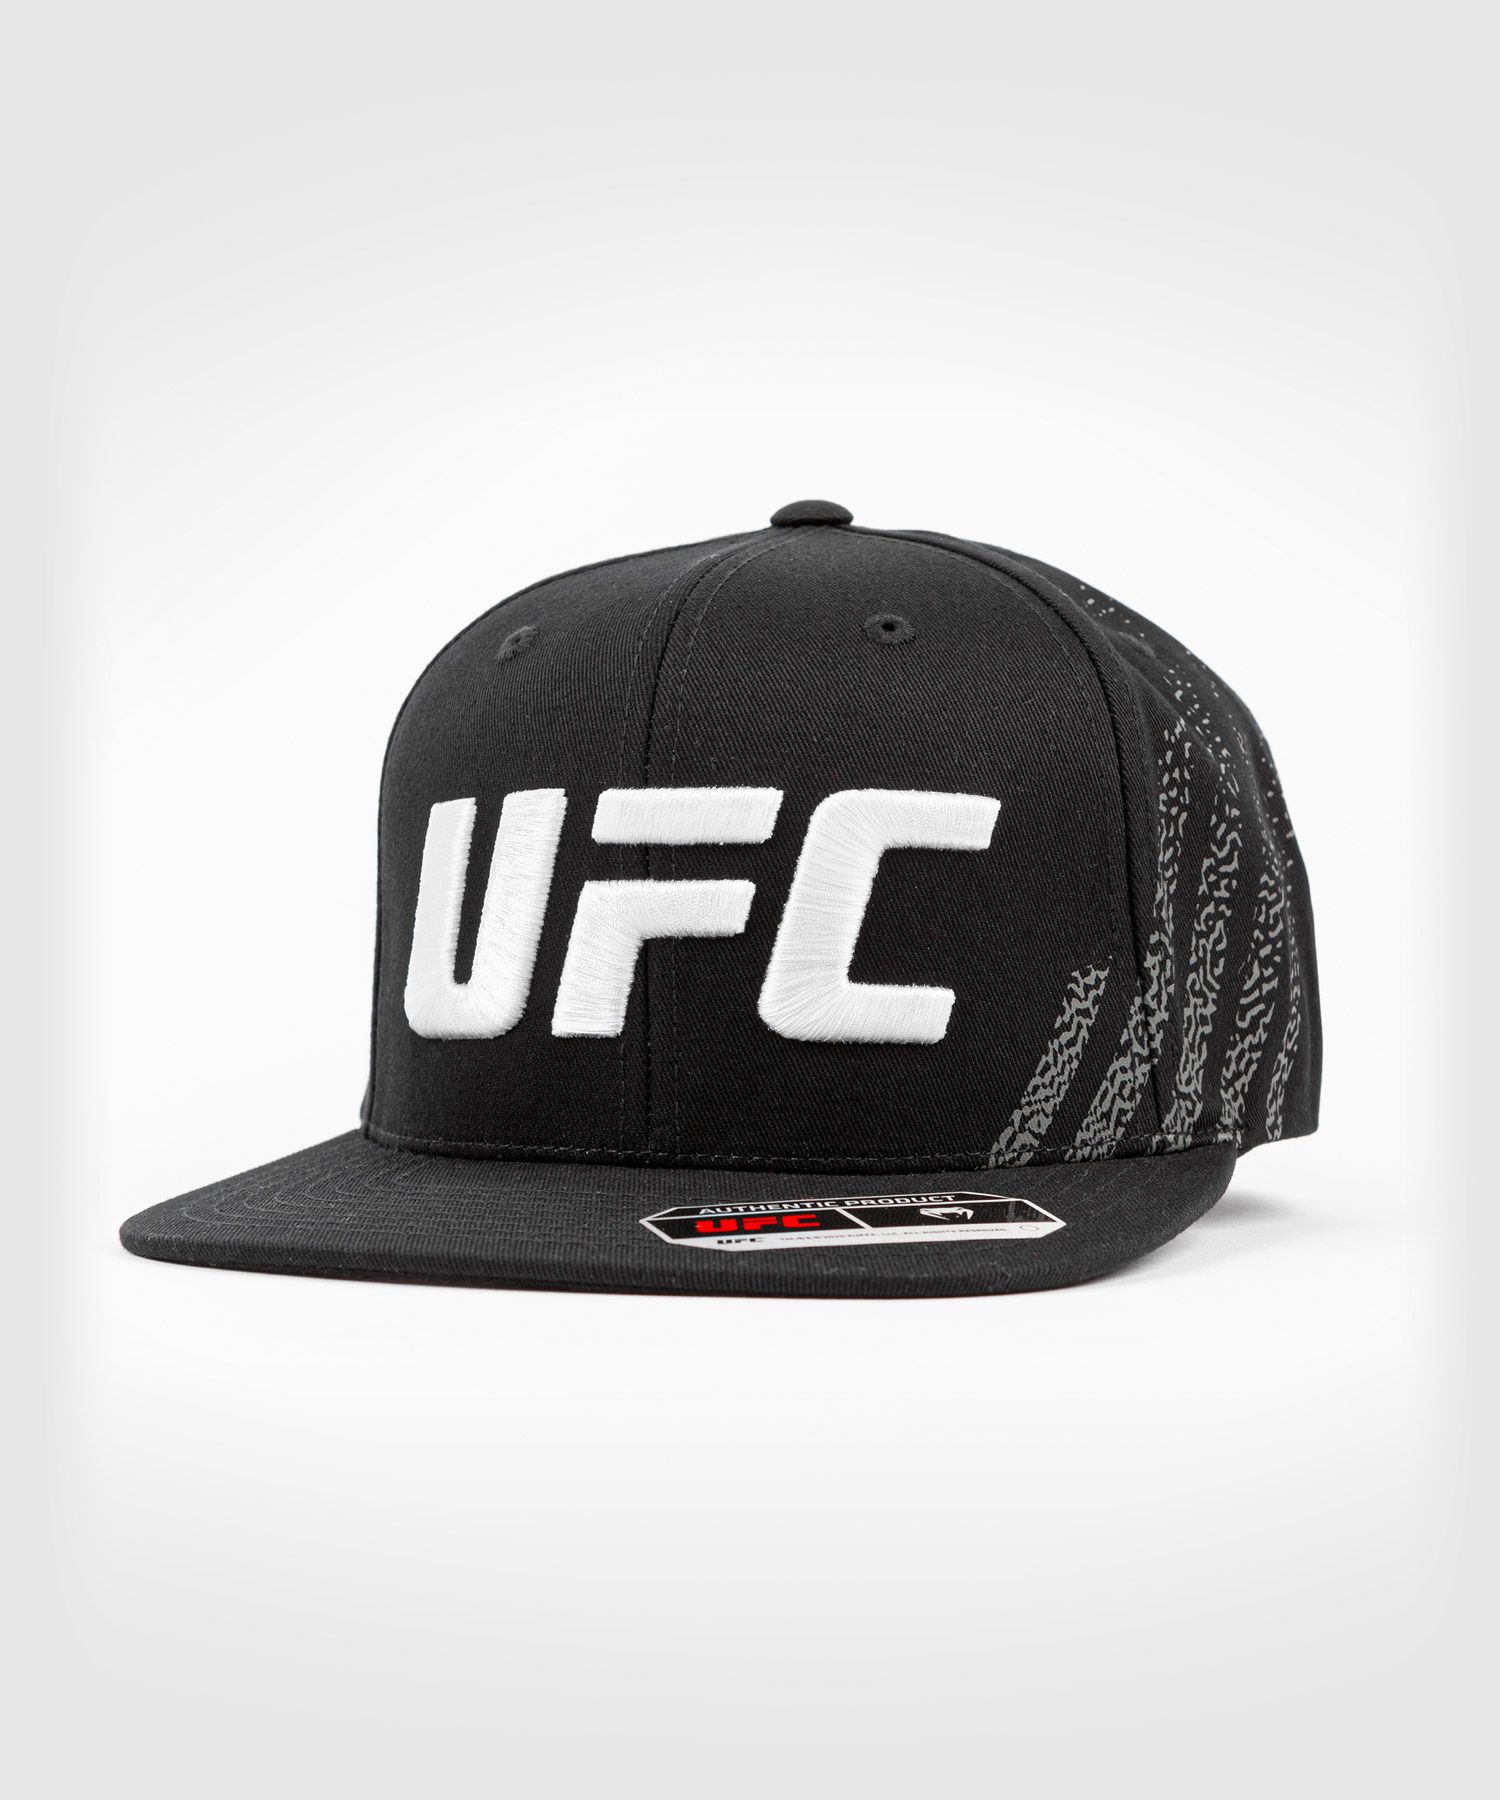 UFC Venum Authentic Fight Night Unisex Walkout Hat - Schwarz